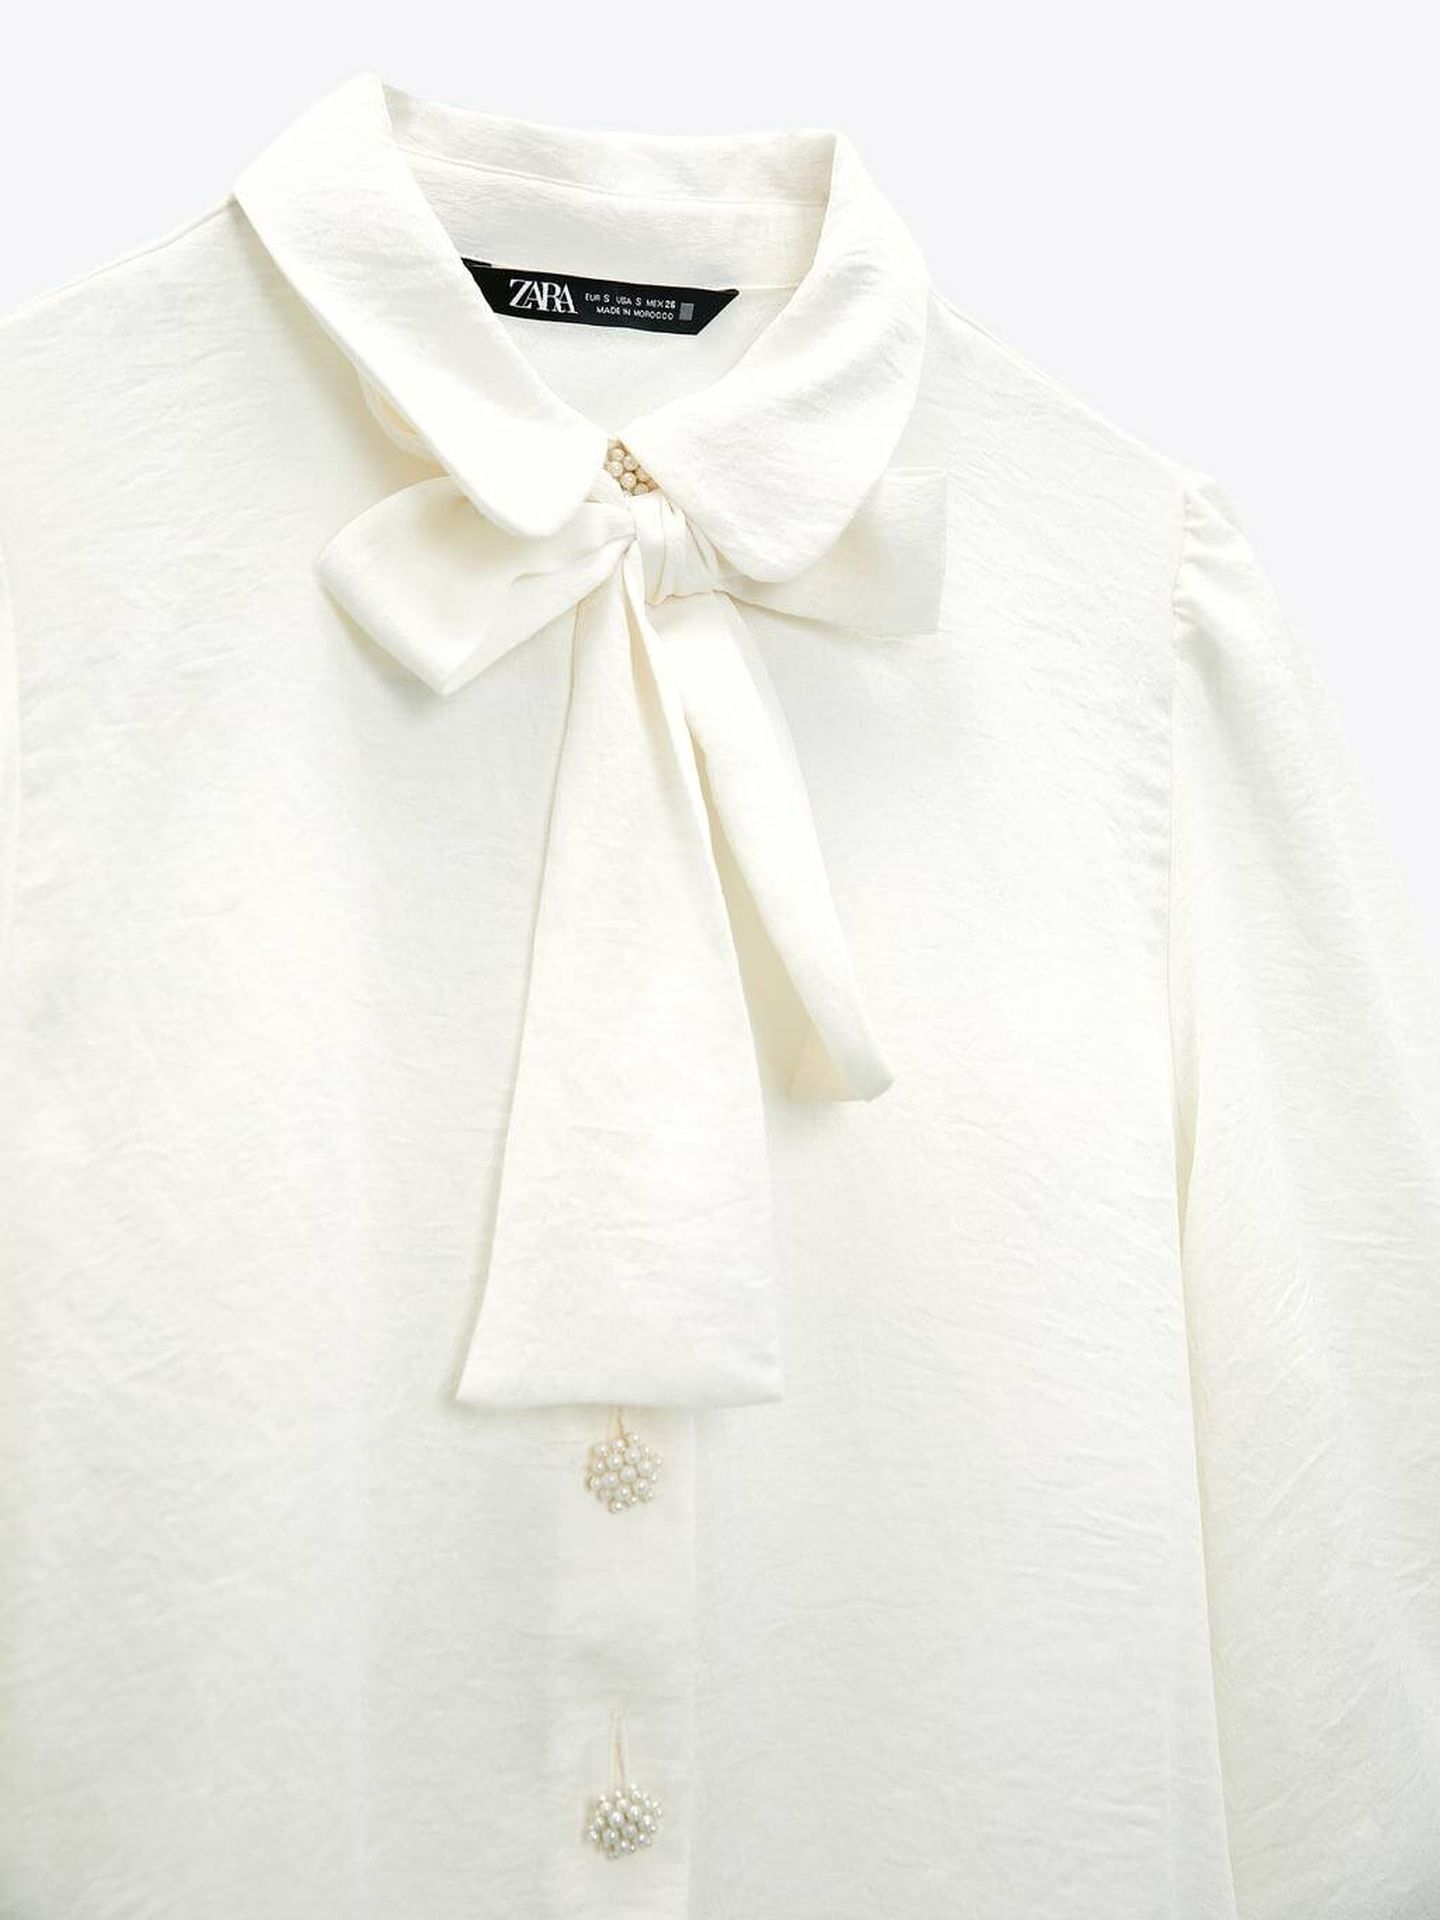 Camisa blanca de novedades. (Zara/Cortesía)